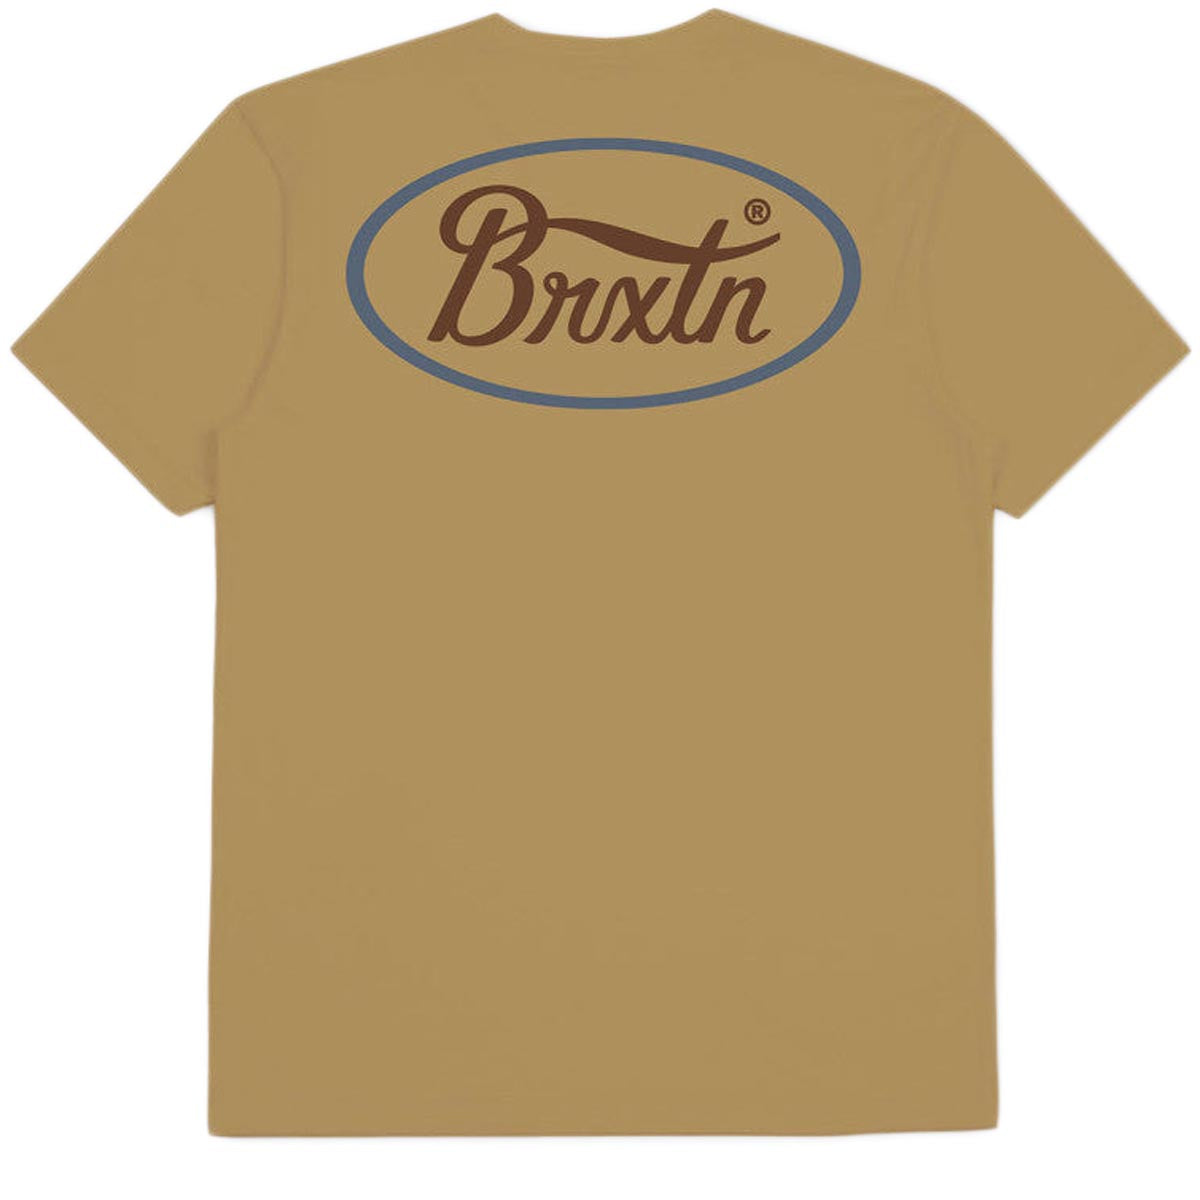 Brixton Parsons T-Shirt - Antelope/Flint Blue/Bison image 1